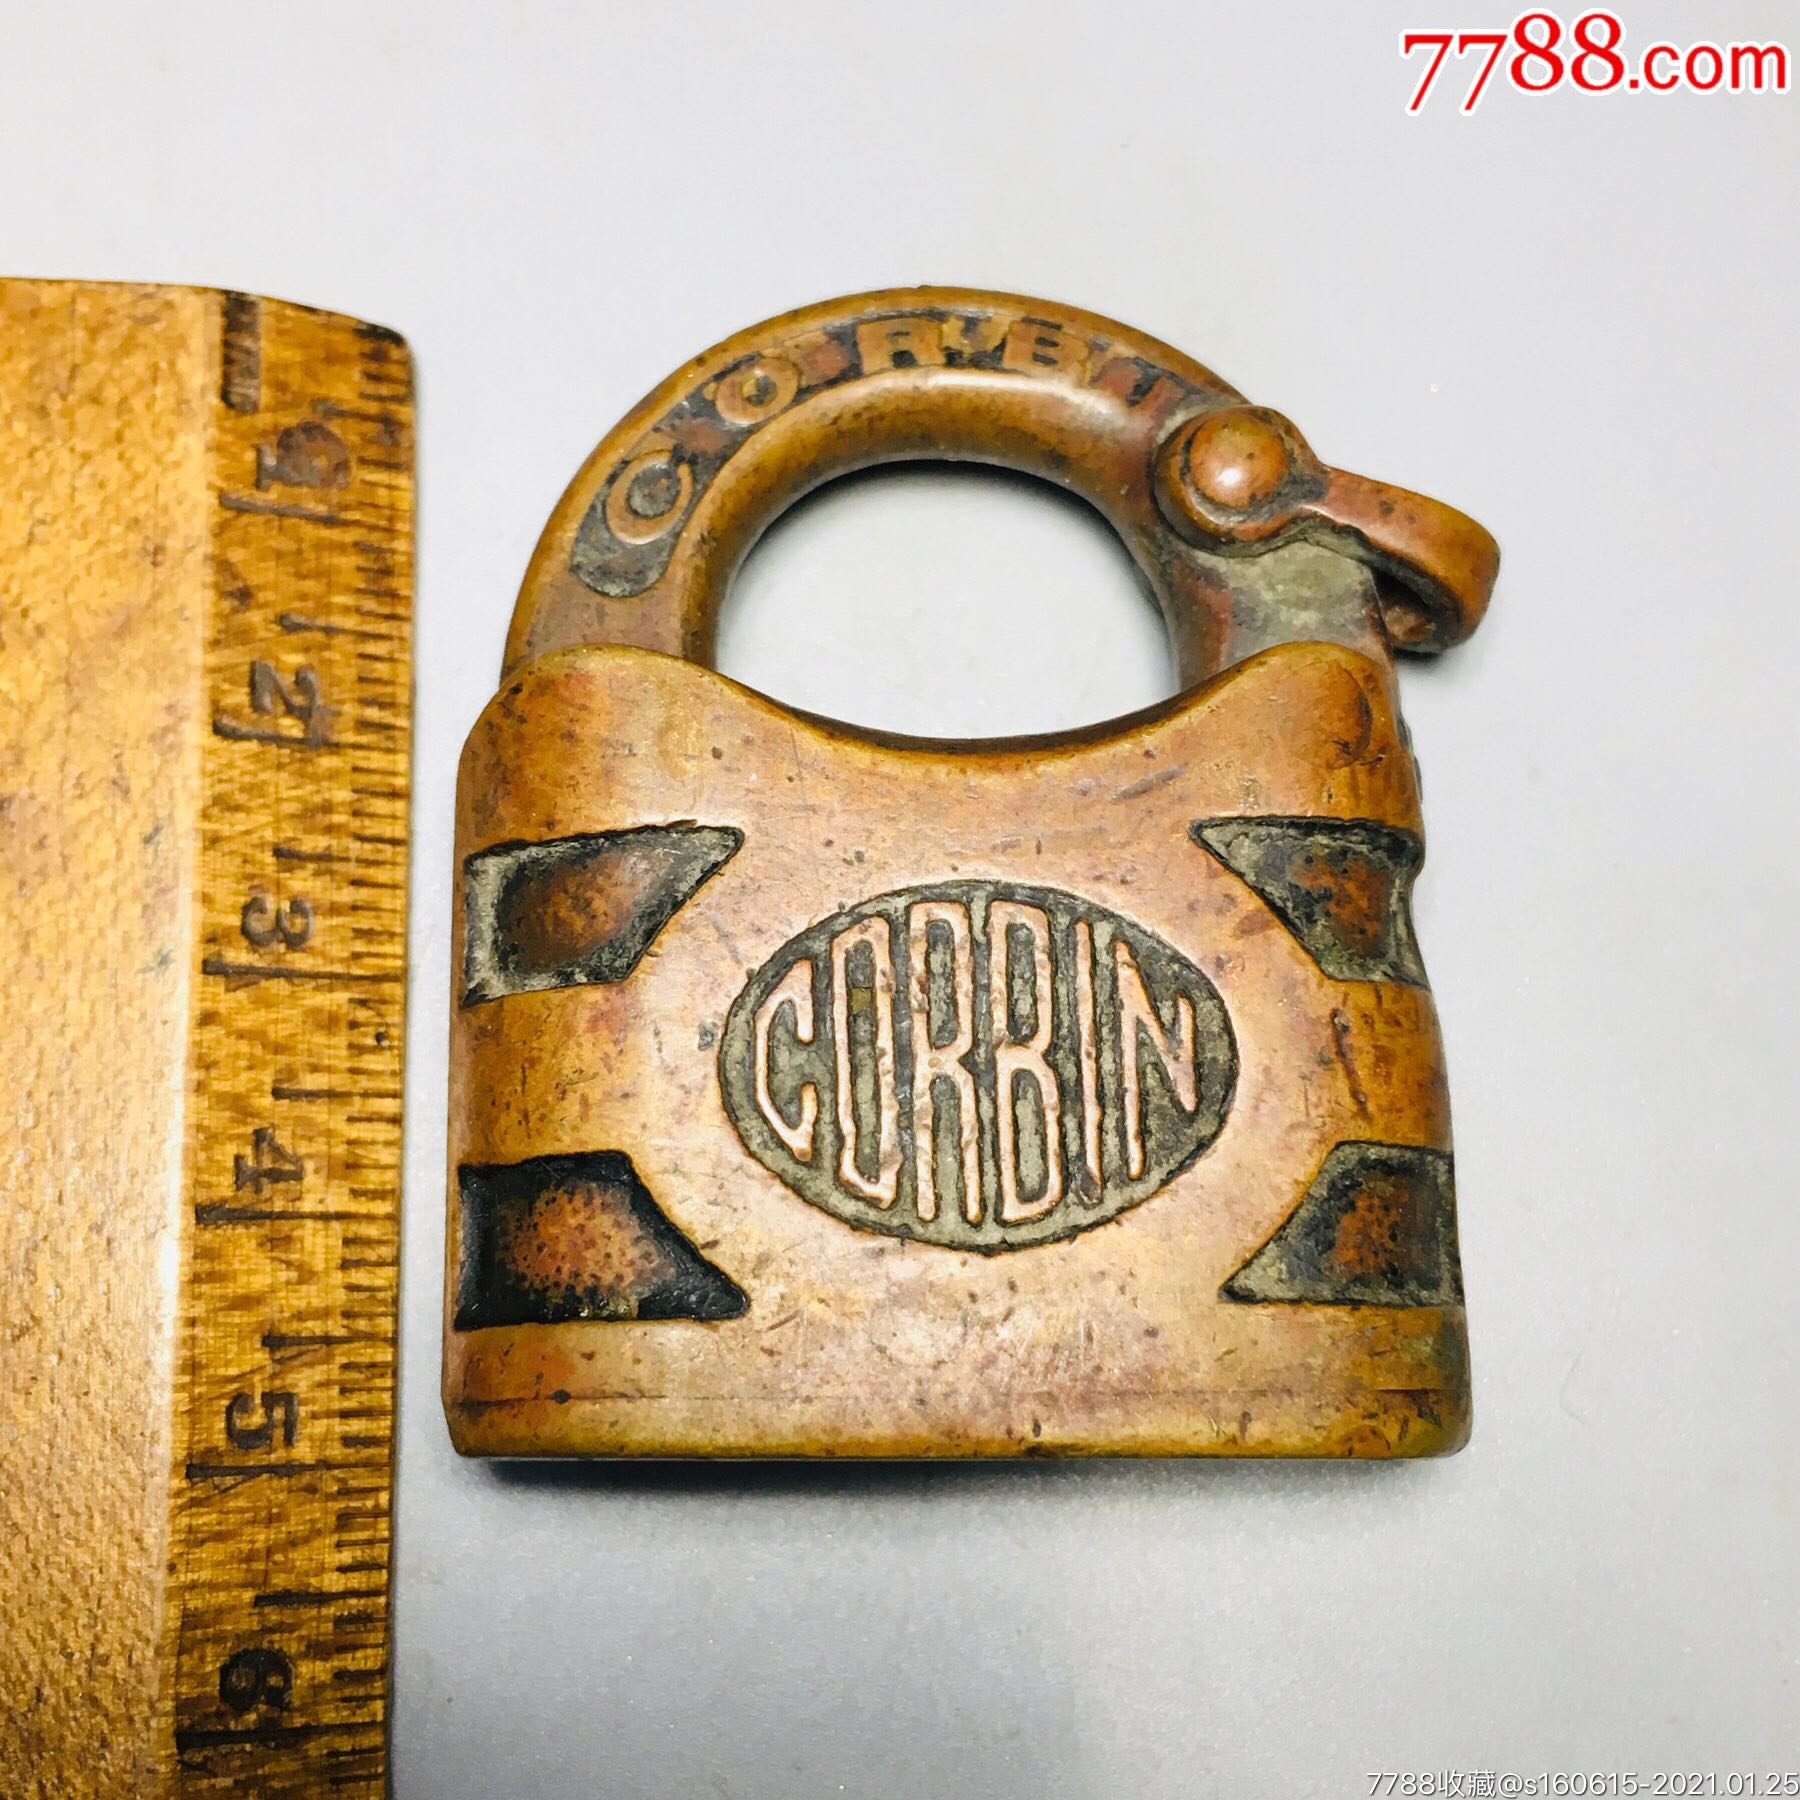 民国时期卡宾牌corbin锁和耶鲁yale齐名的百年老铜锁